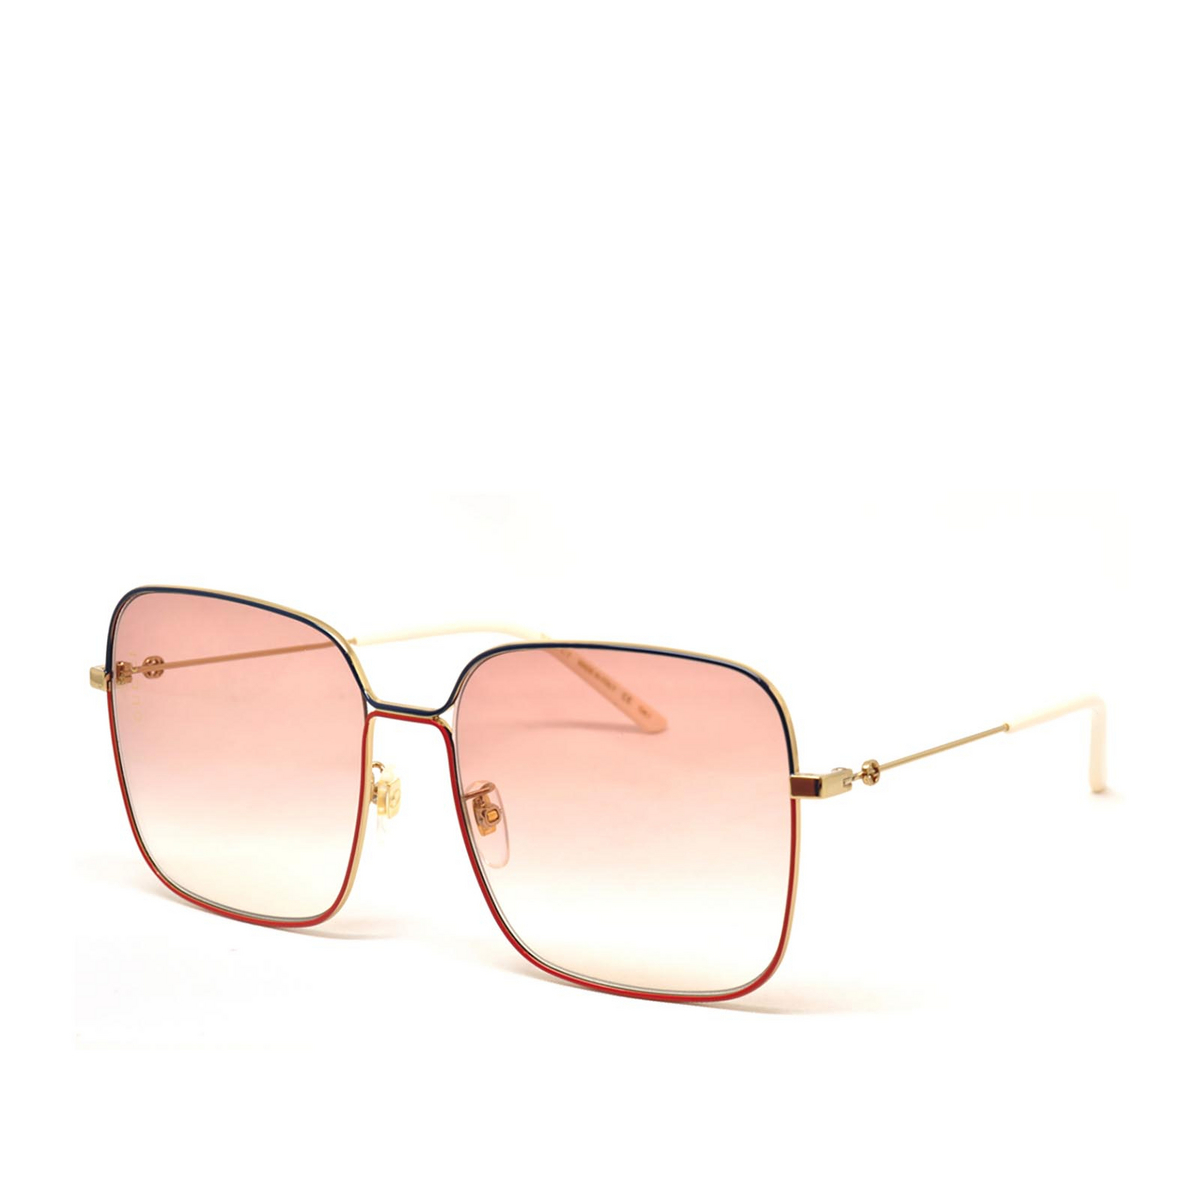 Gucci® Square Sunglasses: GG0443S color Gold 005 - 2/2.